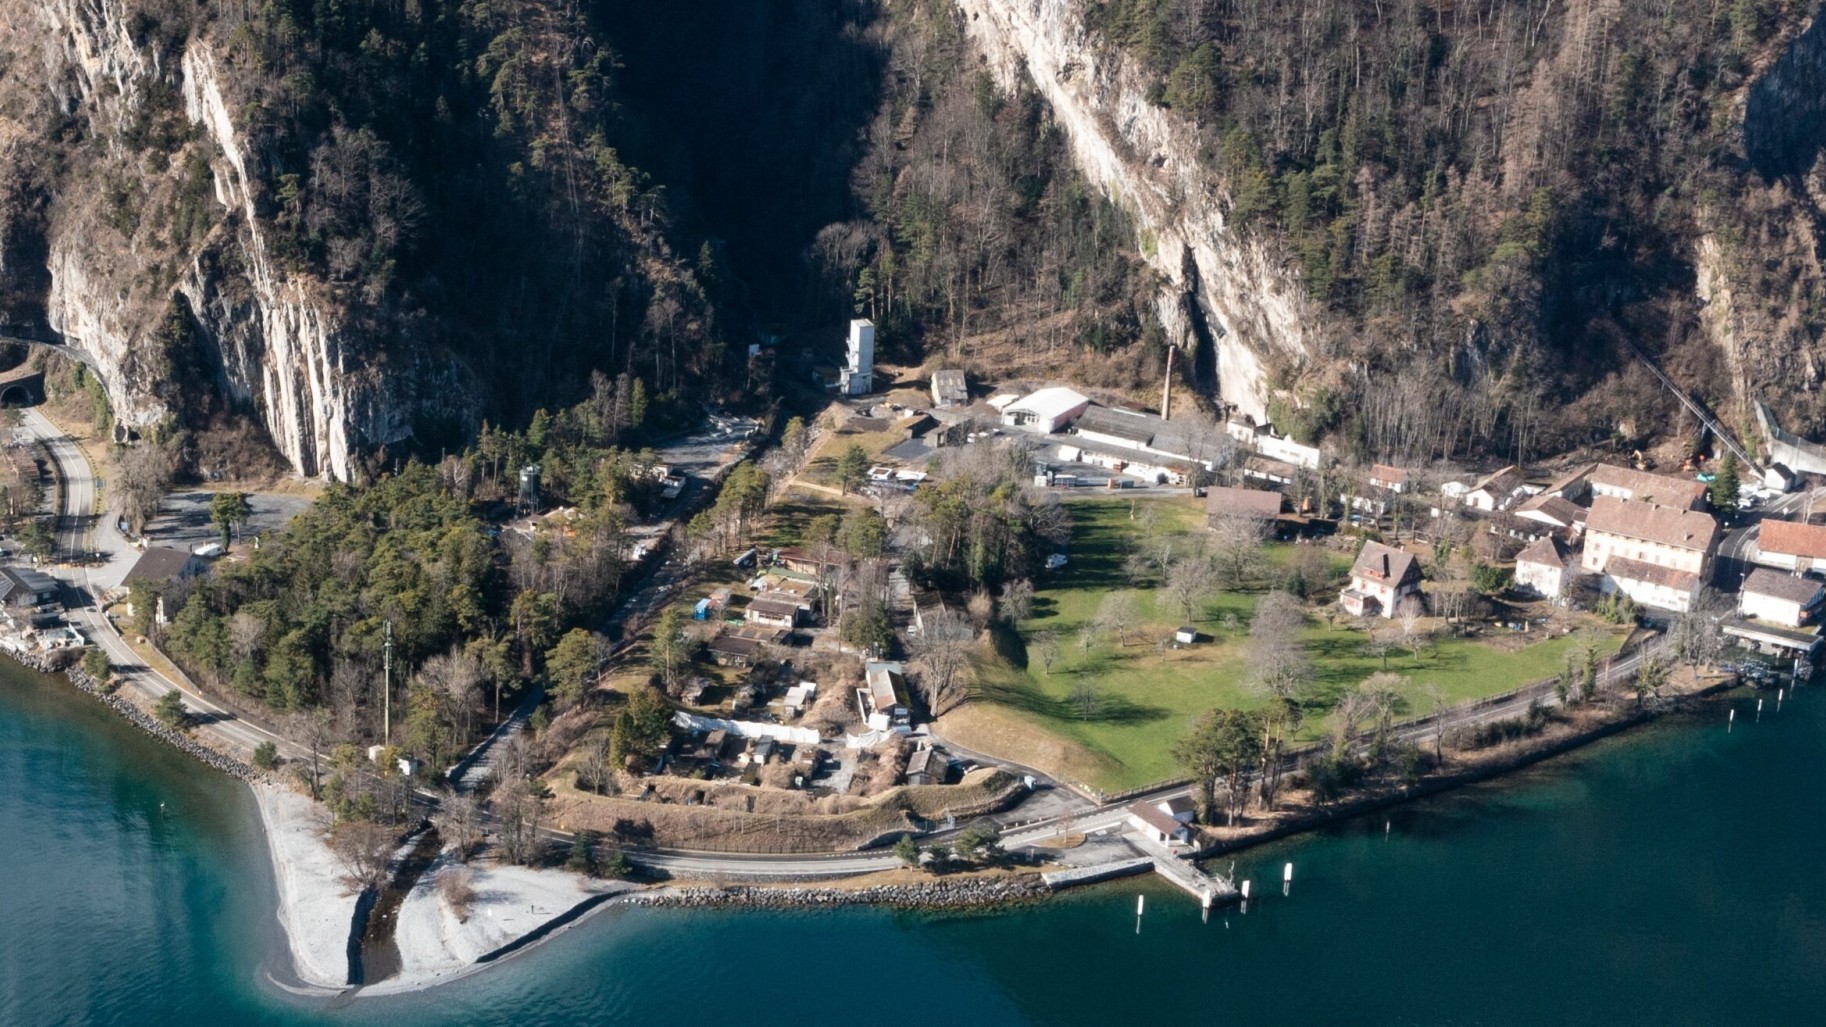 Vue actuelle de la péninsule d'Isleten sur le lac d'Uri. Les opposants désirent conserver la nature originelle du lieu et ne pas le transformer en un endroit dédié au tourisme de masse.